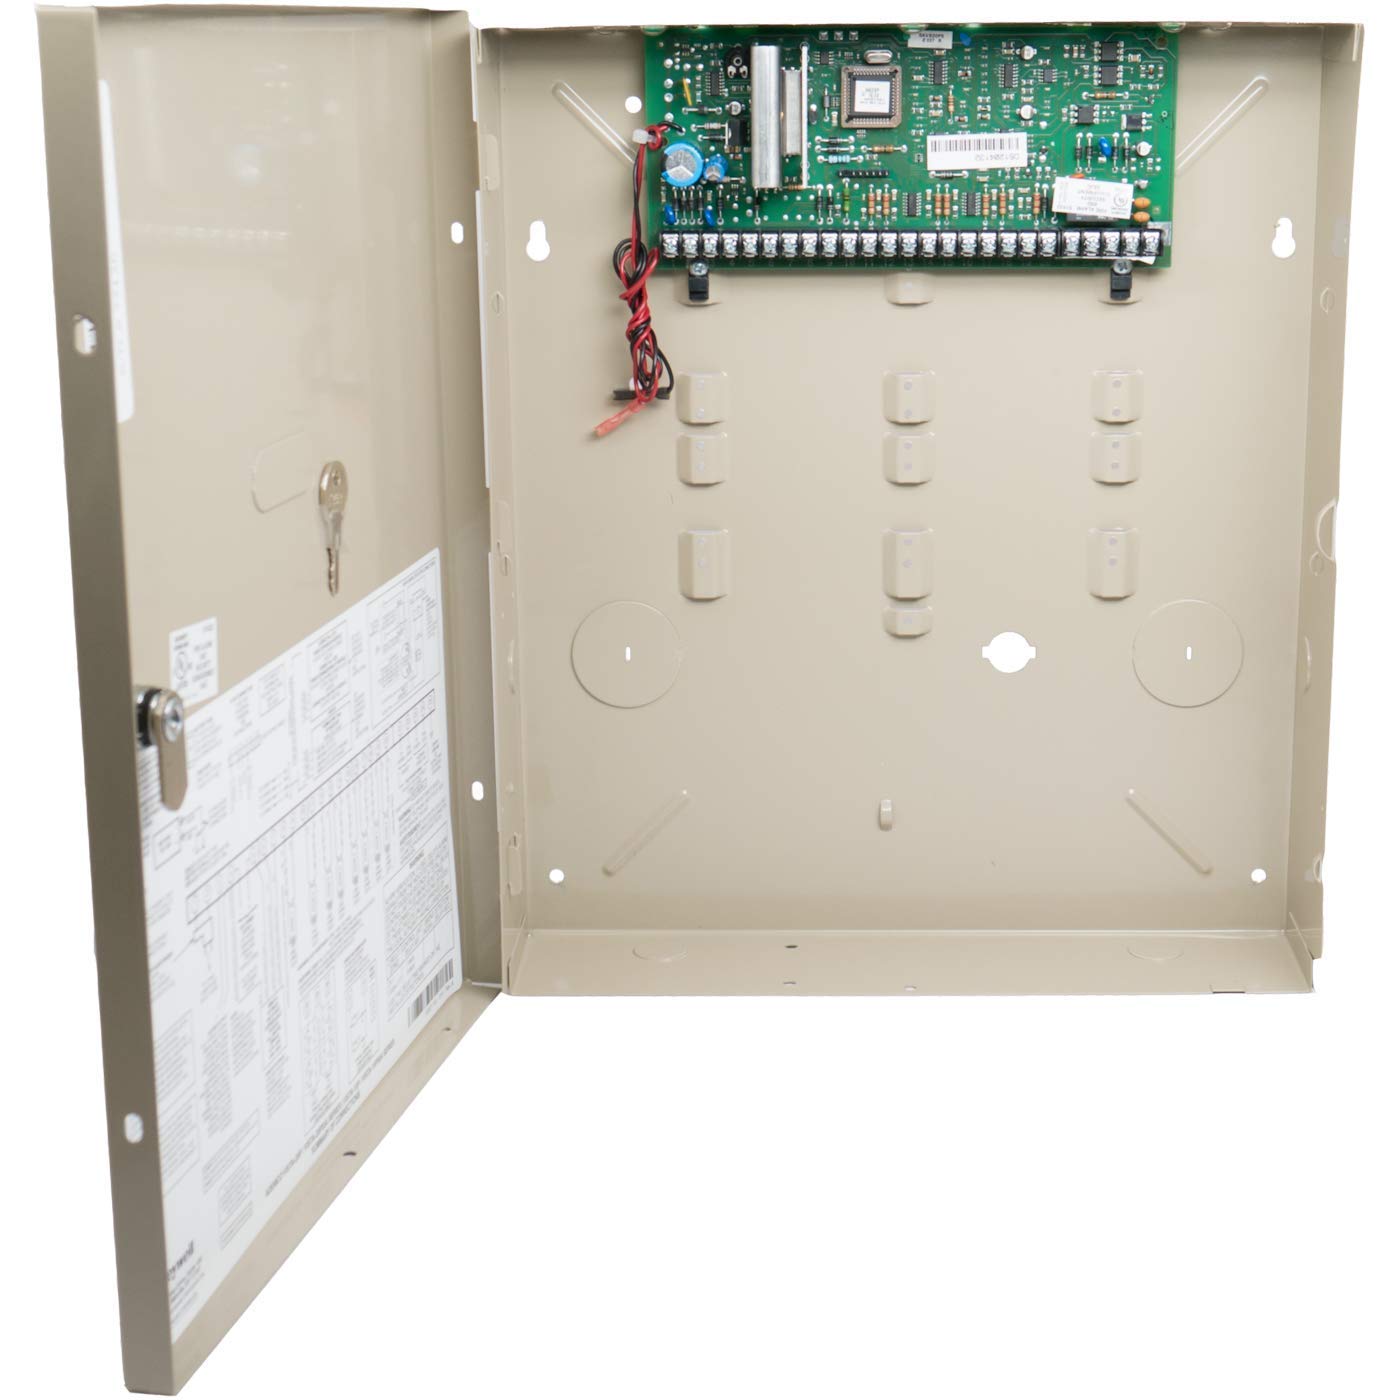 Honeywell VISTA-20P Control Panel, Aluminum Enclosure